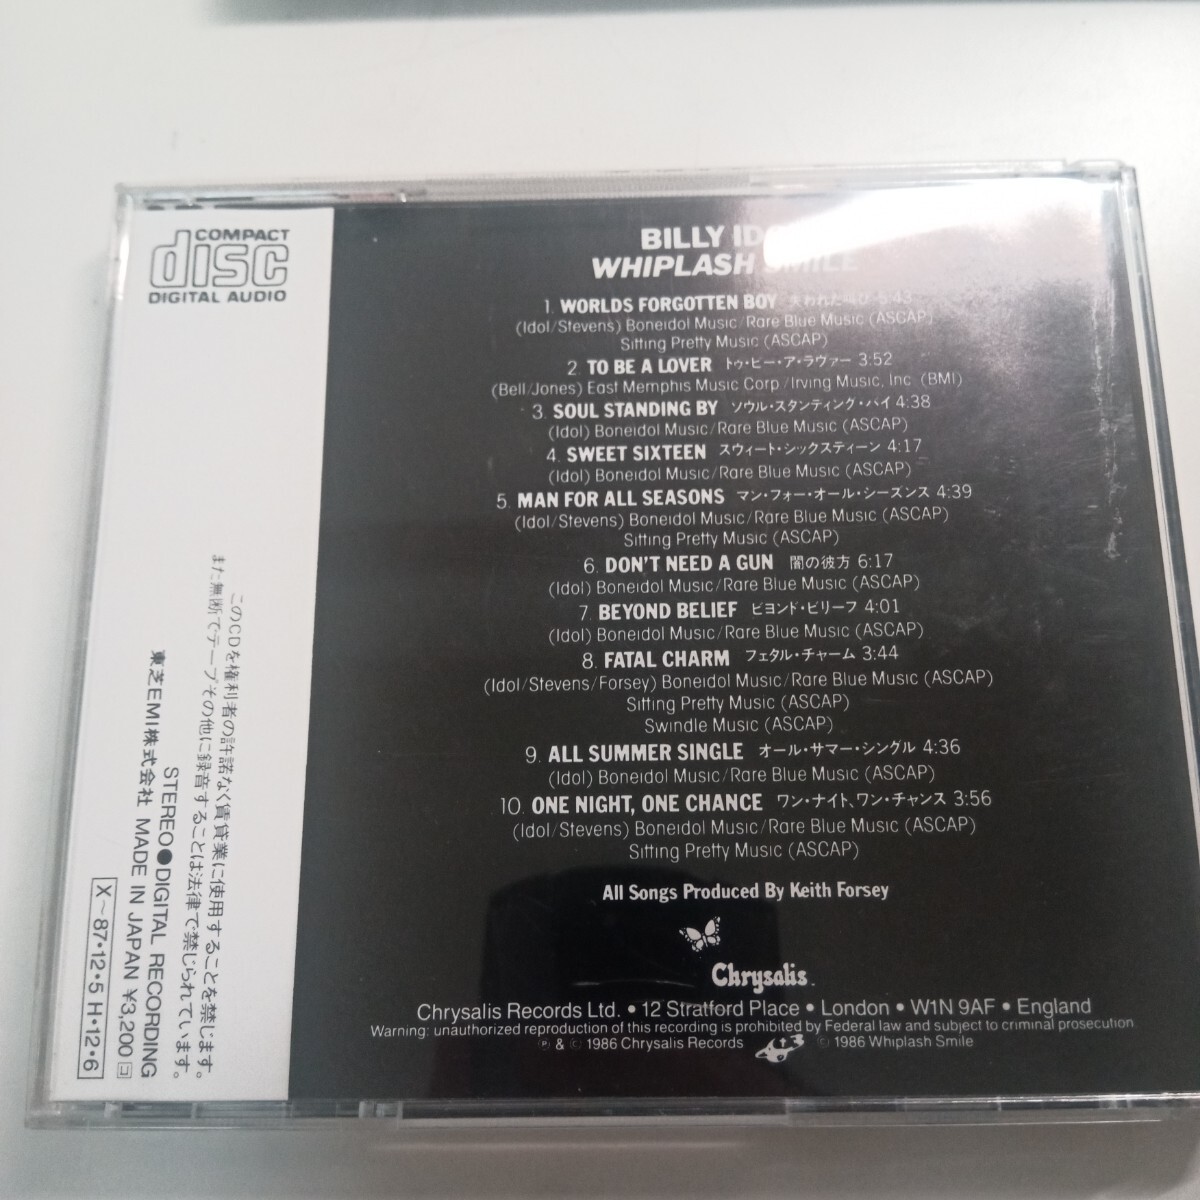 【送料無料】ビリー・アイドル／ウィップラッシュ・スマイル CP32-5096 国内盤CD 1A1 Billy Idol